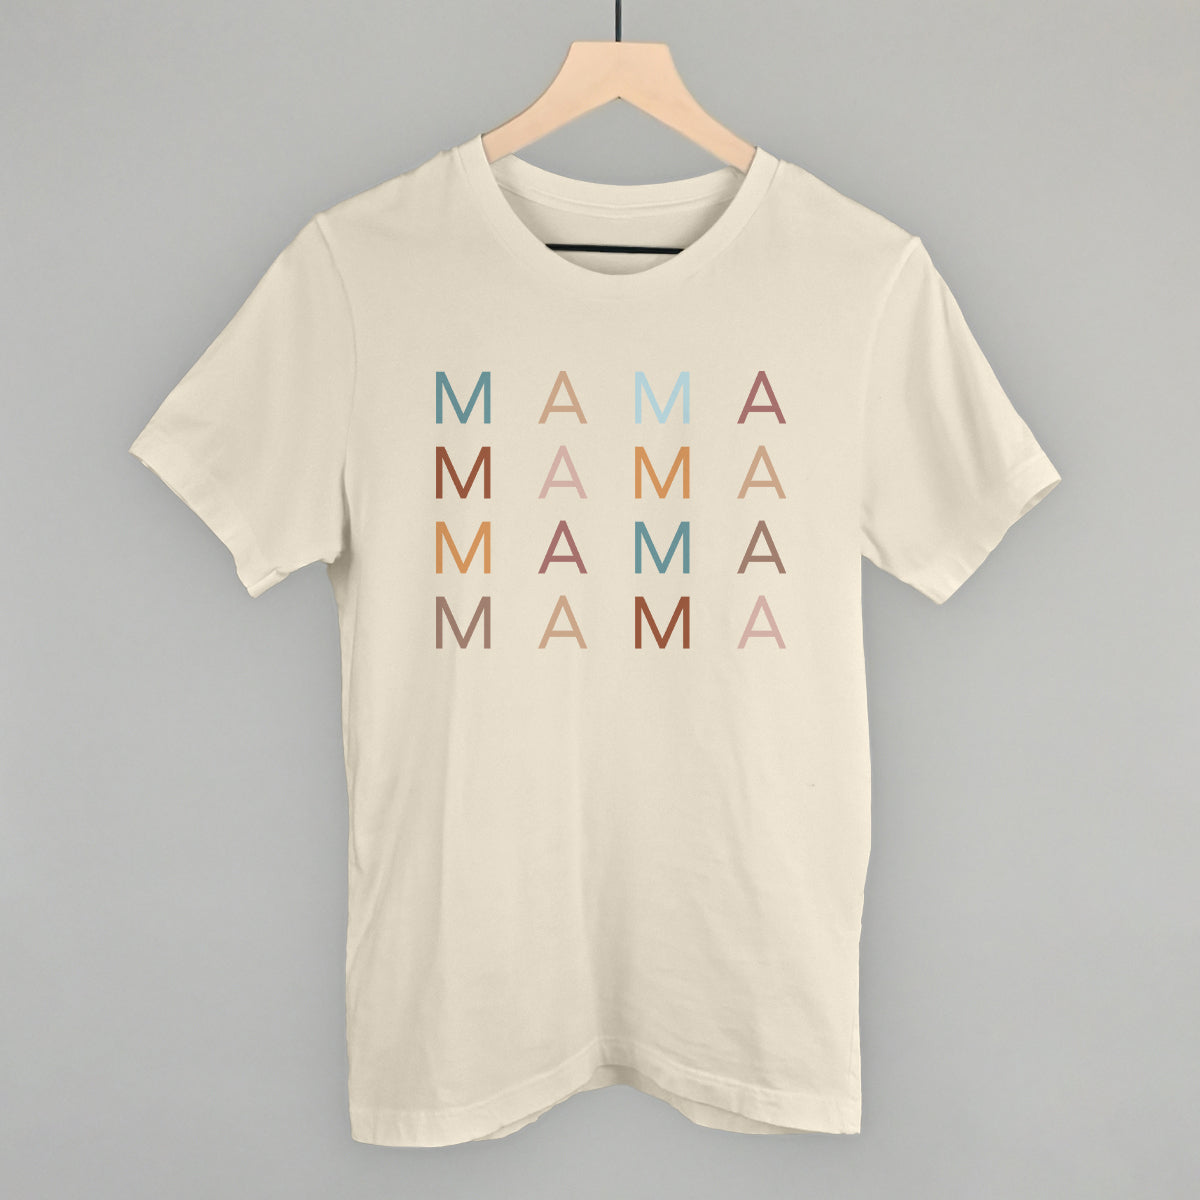 Mama (Repeated)